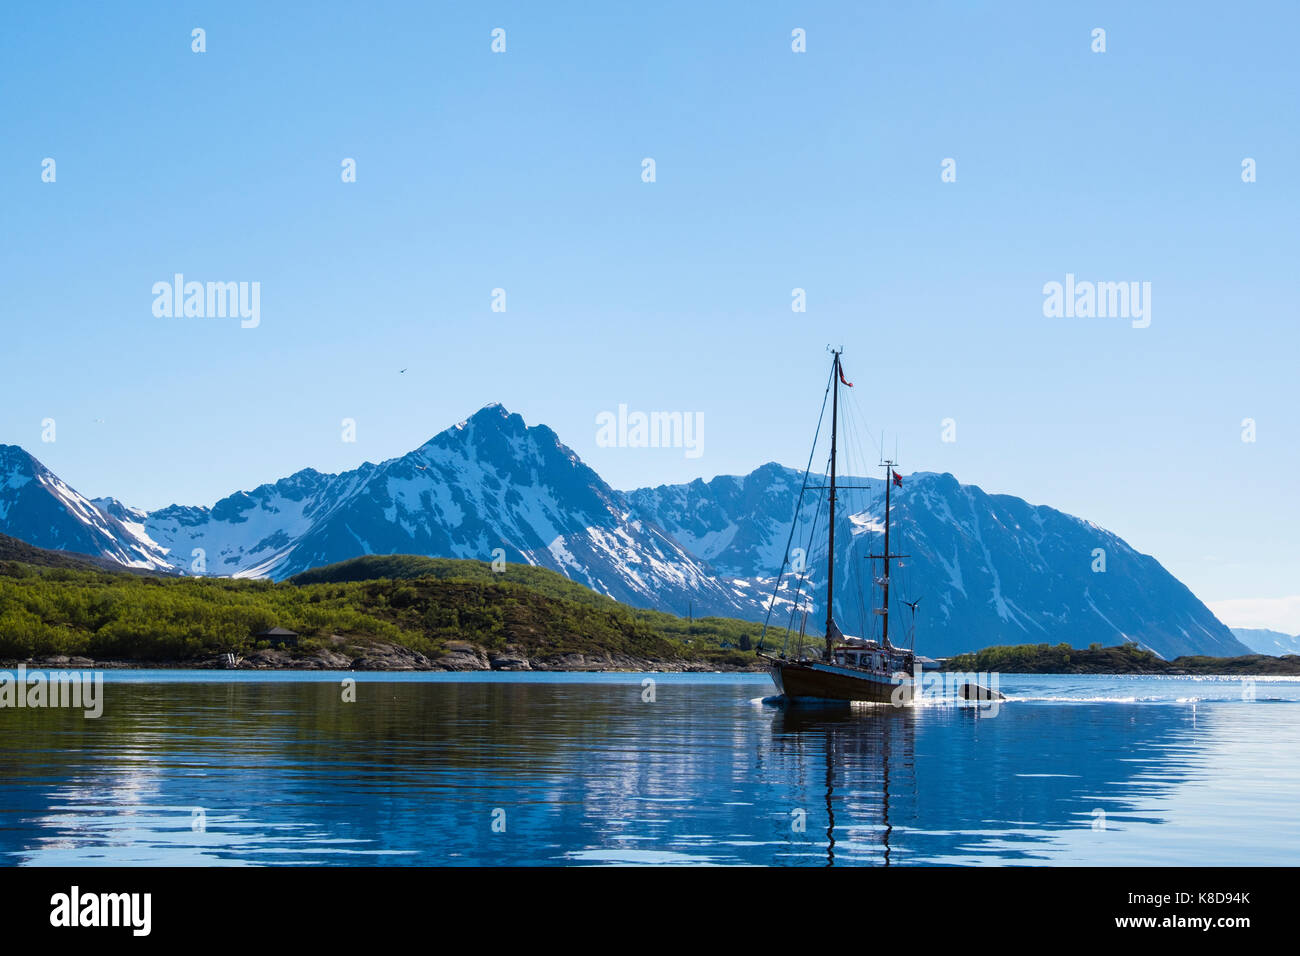 Voilier naviguant en eaux calmes au large de la côte du nord de la Norvège et Bjarkøya Helløya entre les îles. Bjarkøya, Troms, Norway, Scandinavia, Europe Banque D'Images